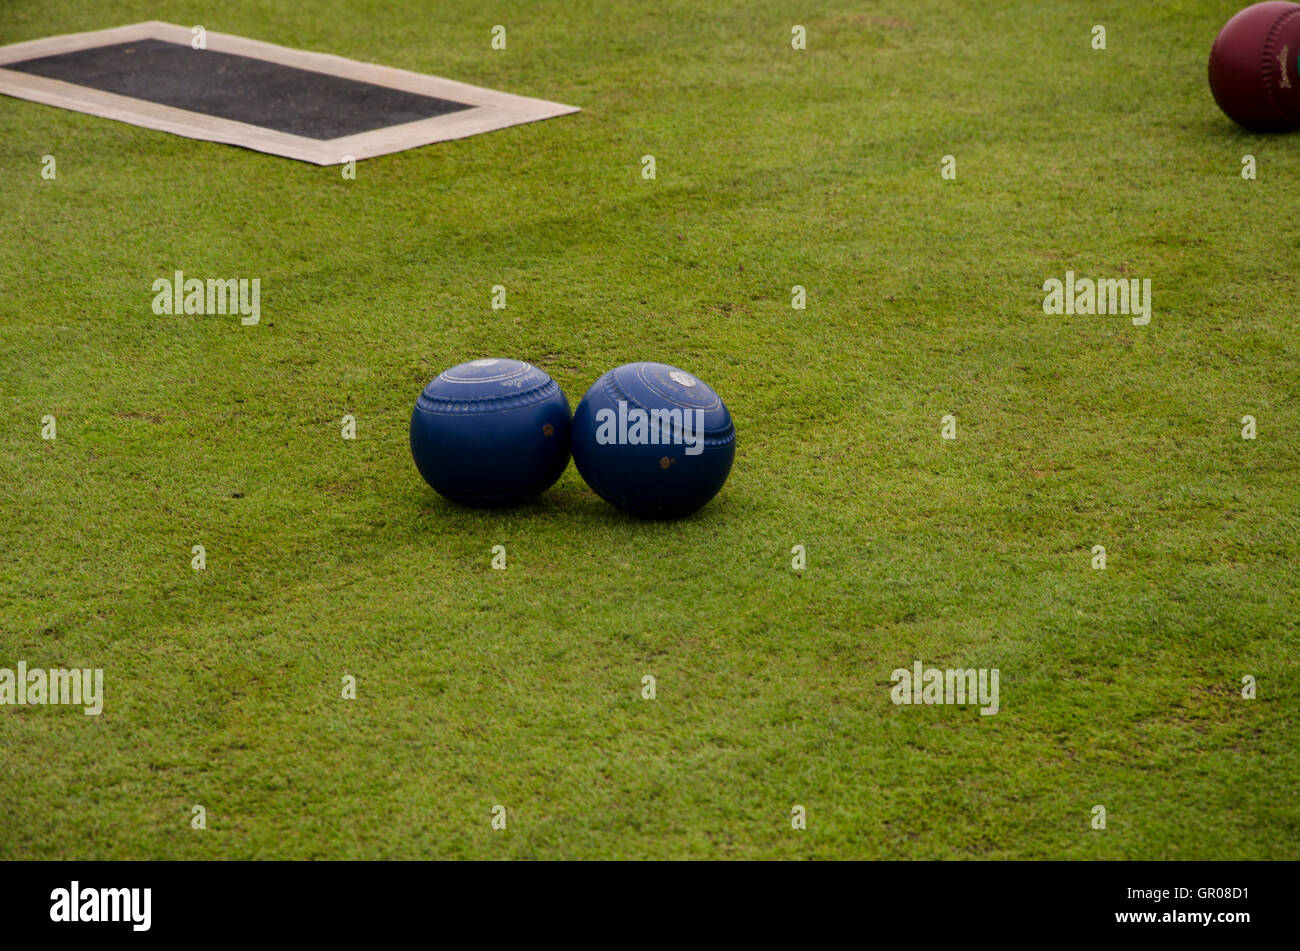 Dieses Bild zeigt einige Bowling-Kugeln und eine Matte im Lawn Bowls verwendet. Aufgenommen am 20. August 2016 bei Portstewart, Nordirland Stockfoto